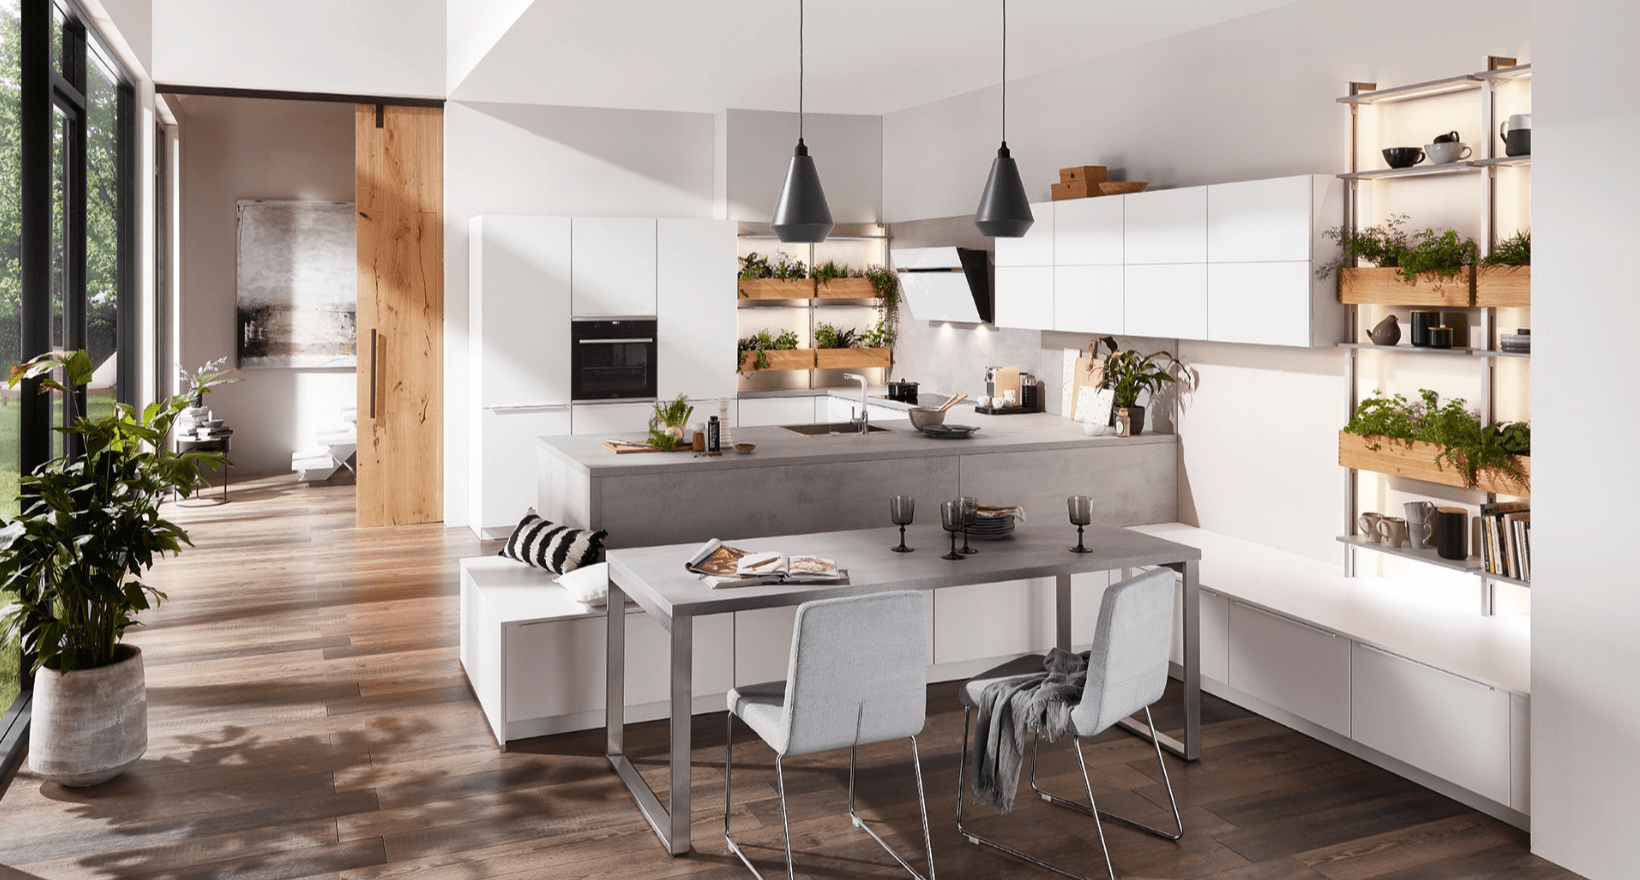 Design kitchen by premier kitchen suppliers